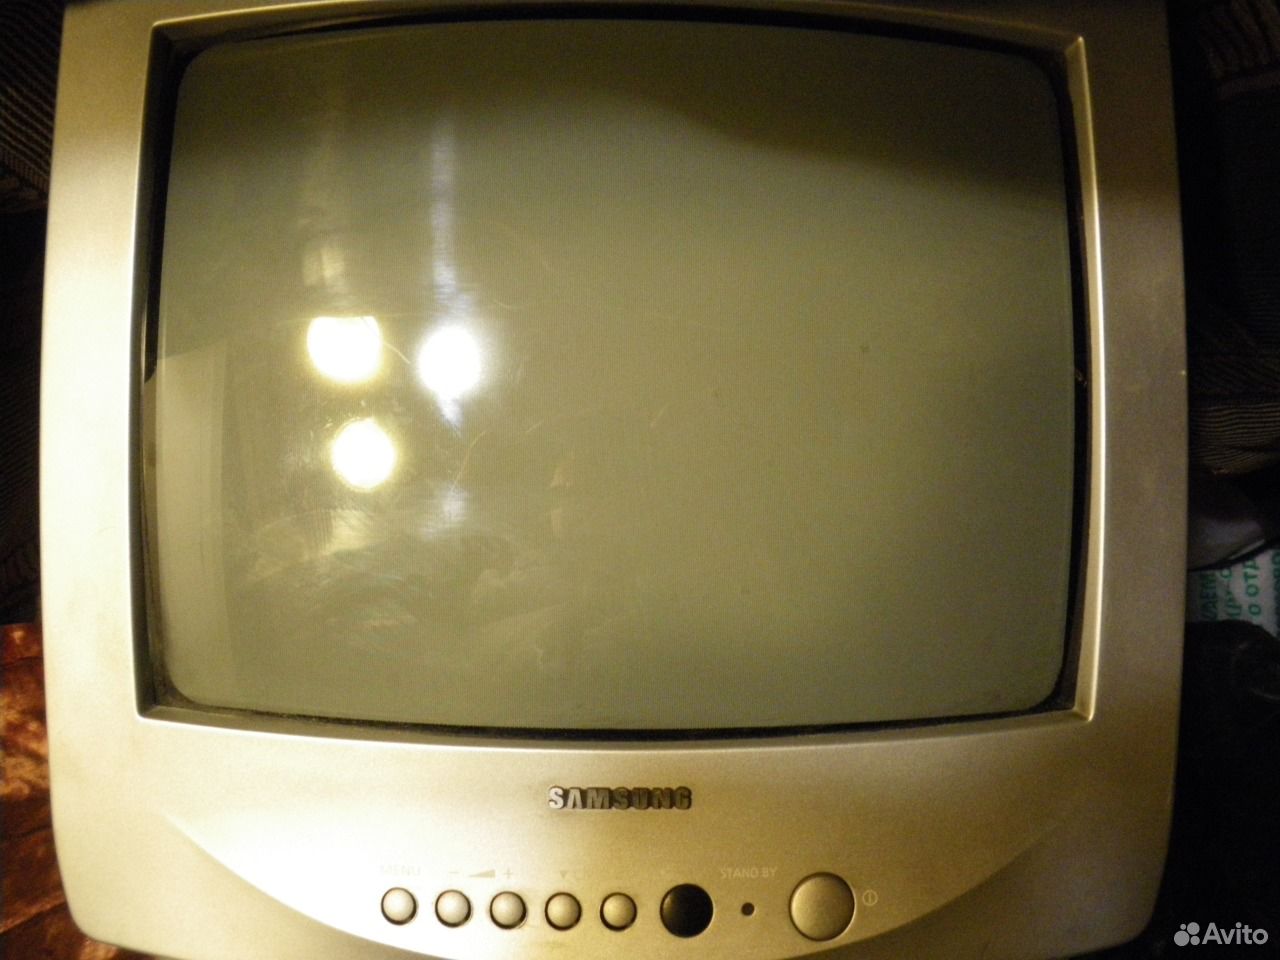 Авито куплю маленький телевизор. Маленький телевизор. Телевизор Samsung маленький. Телевизор самсунг маленький старый. Старый телевизор самсунг 2000.